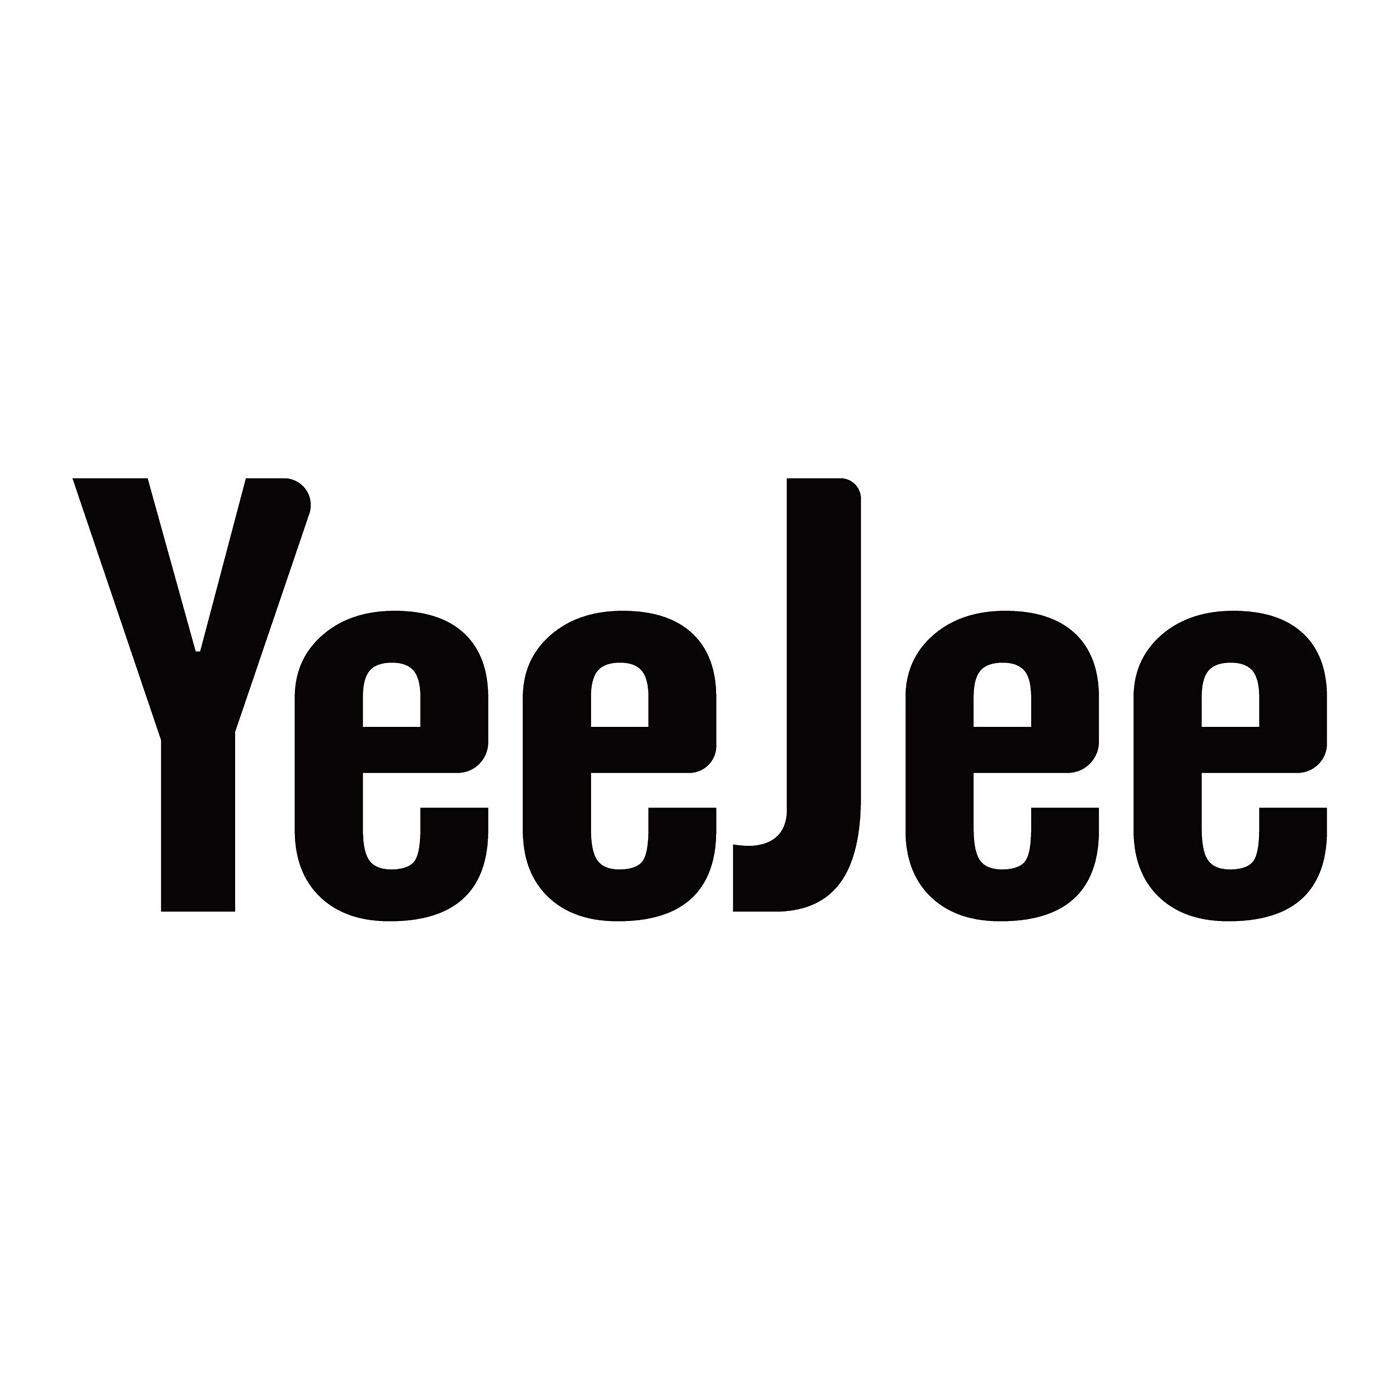 yeejee 商标公告